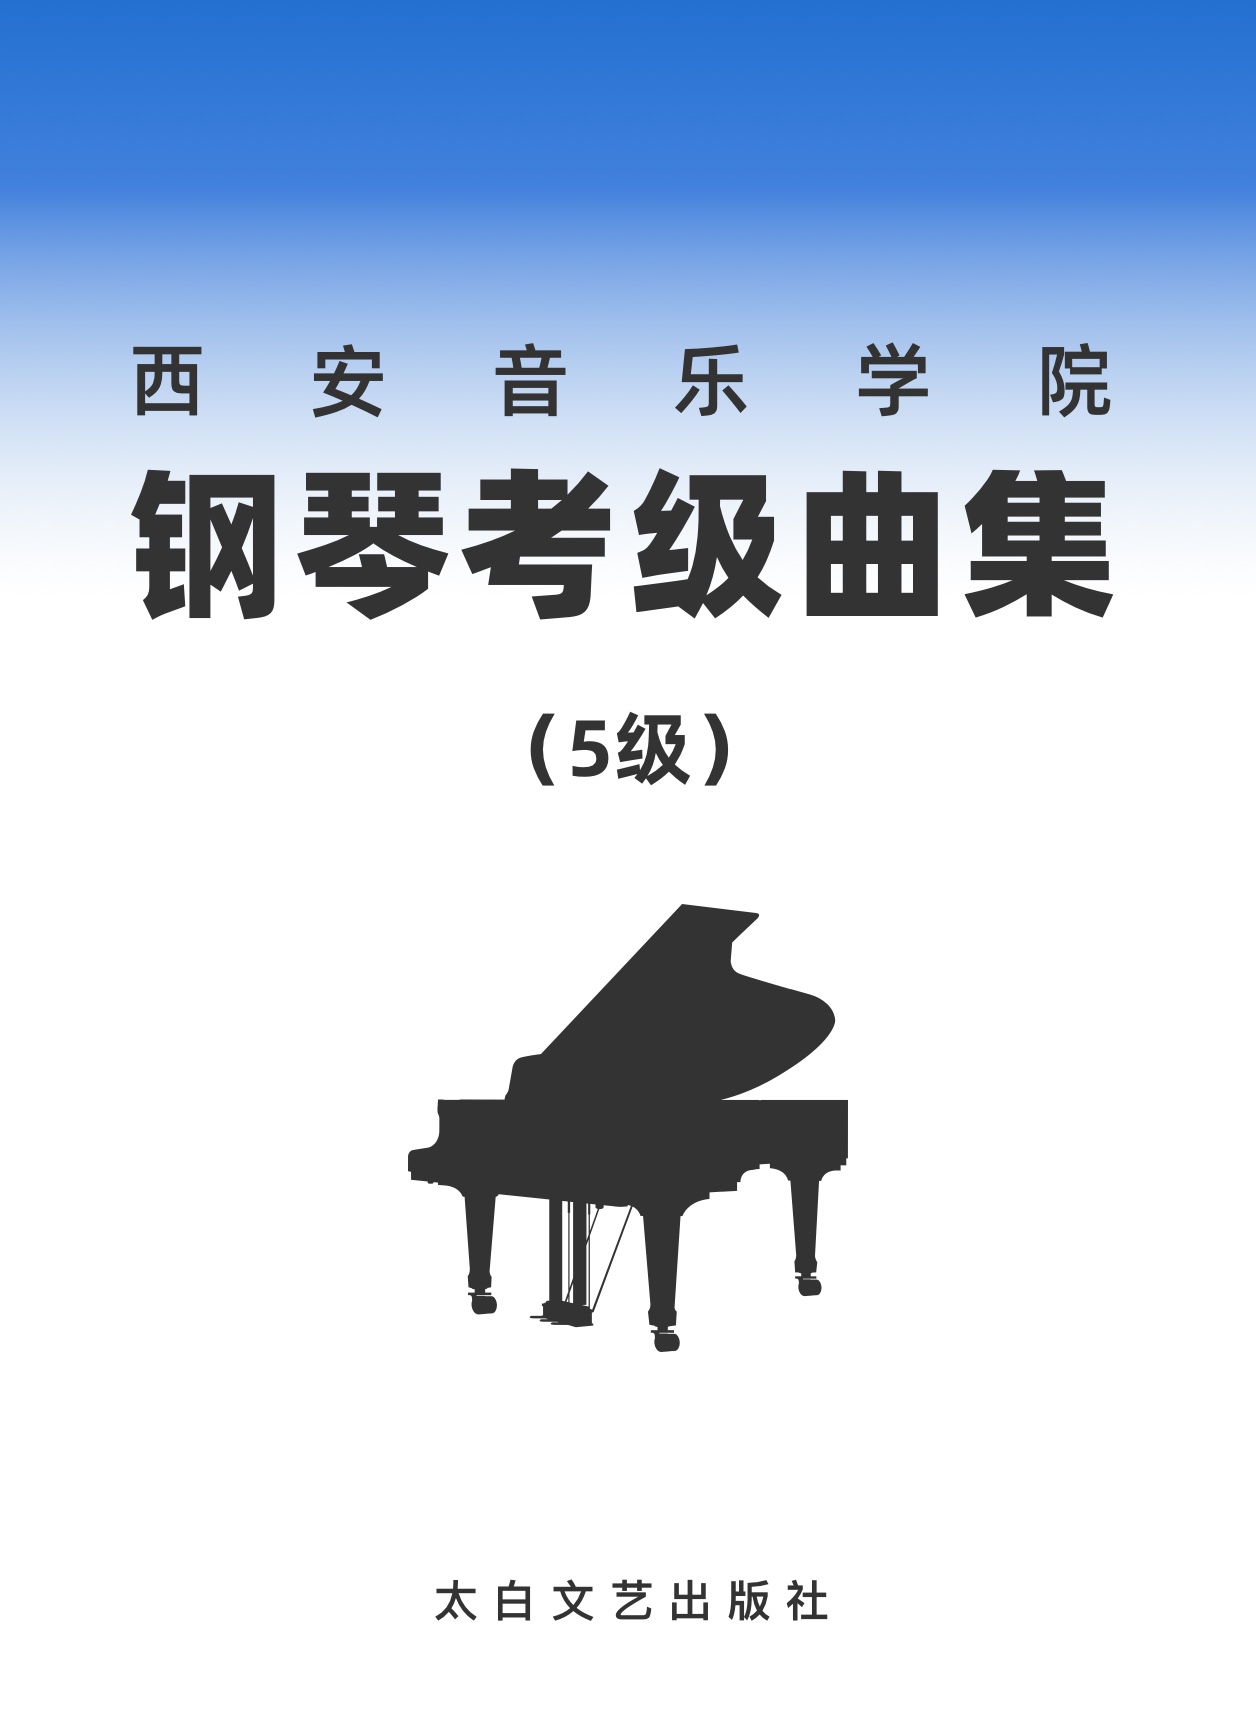 21第五级 拿波里舞曲钢琴简谱 数字双手